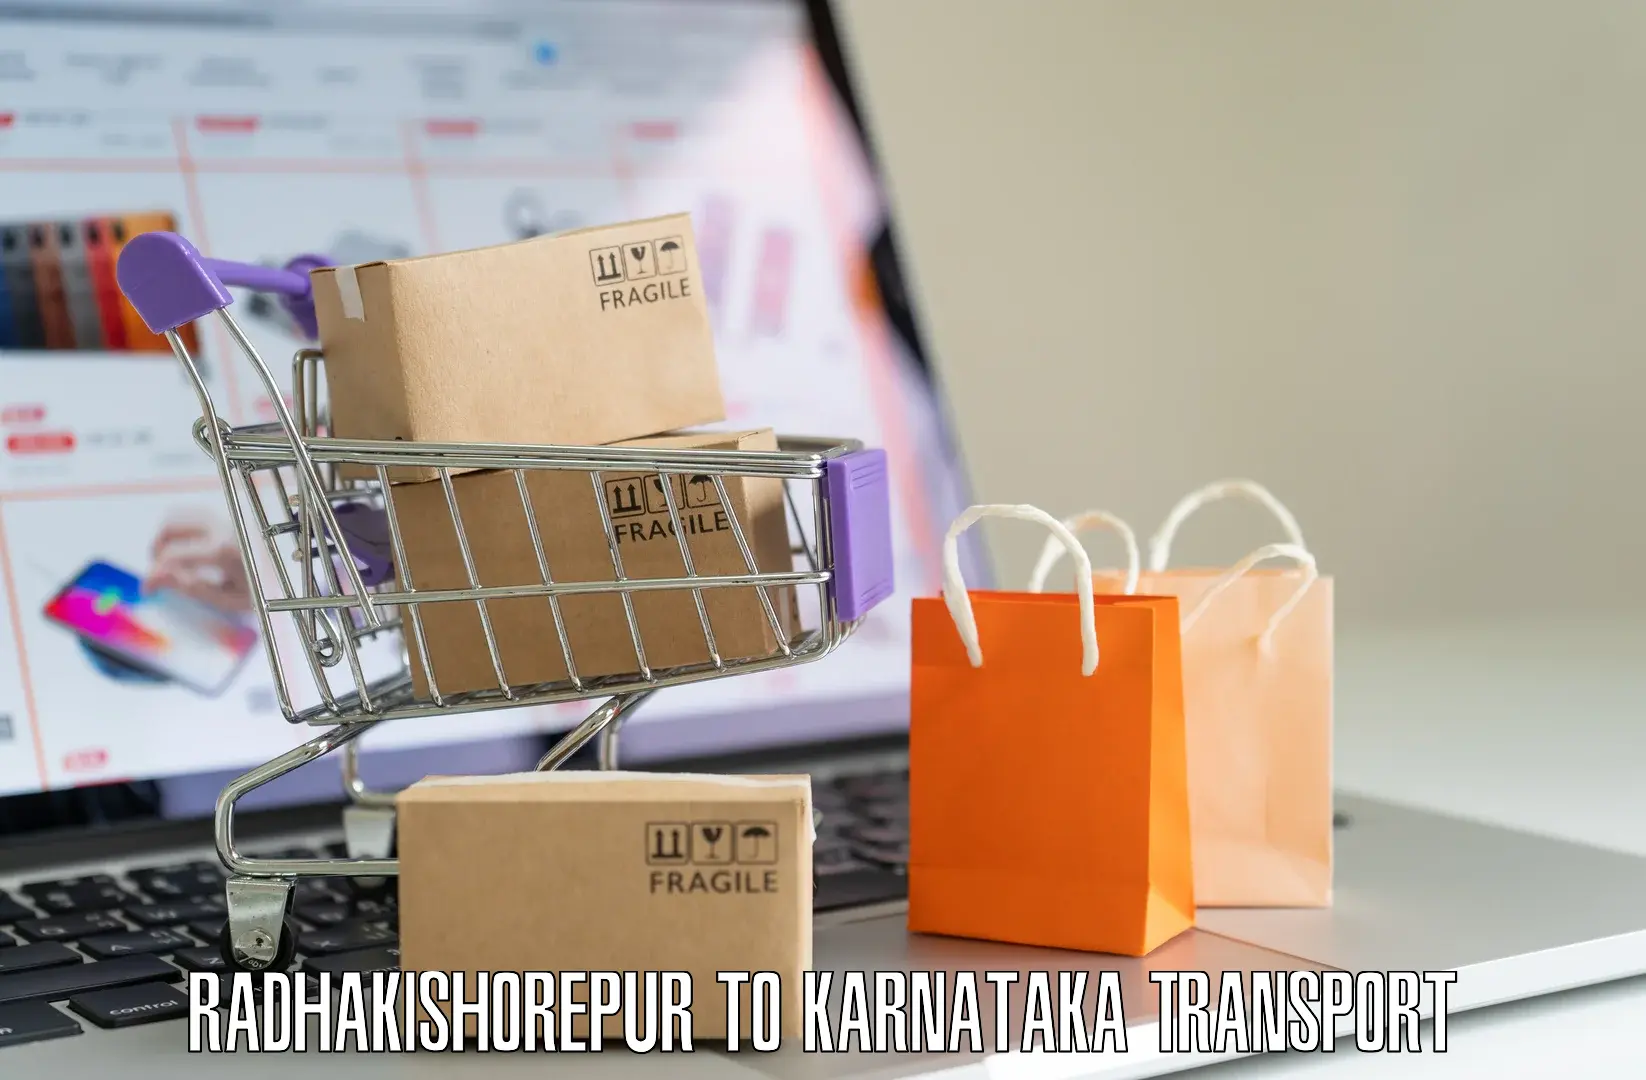 Daily transport service Radhakishorepur to Khanapur Karnataka